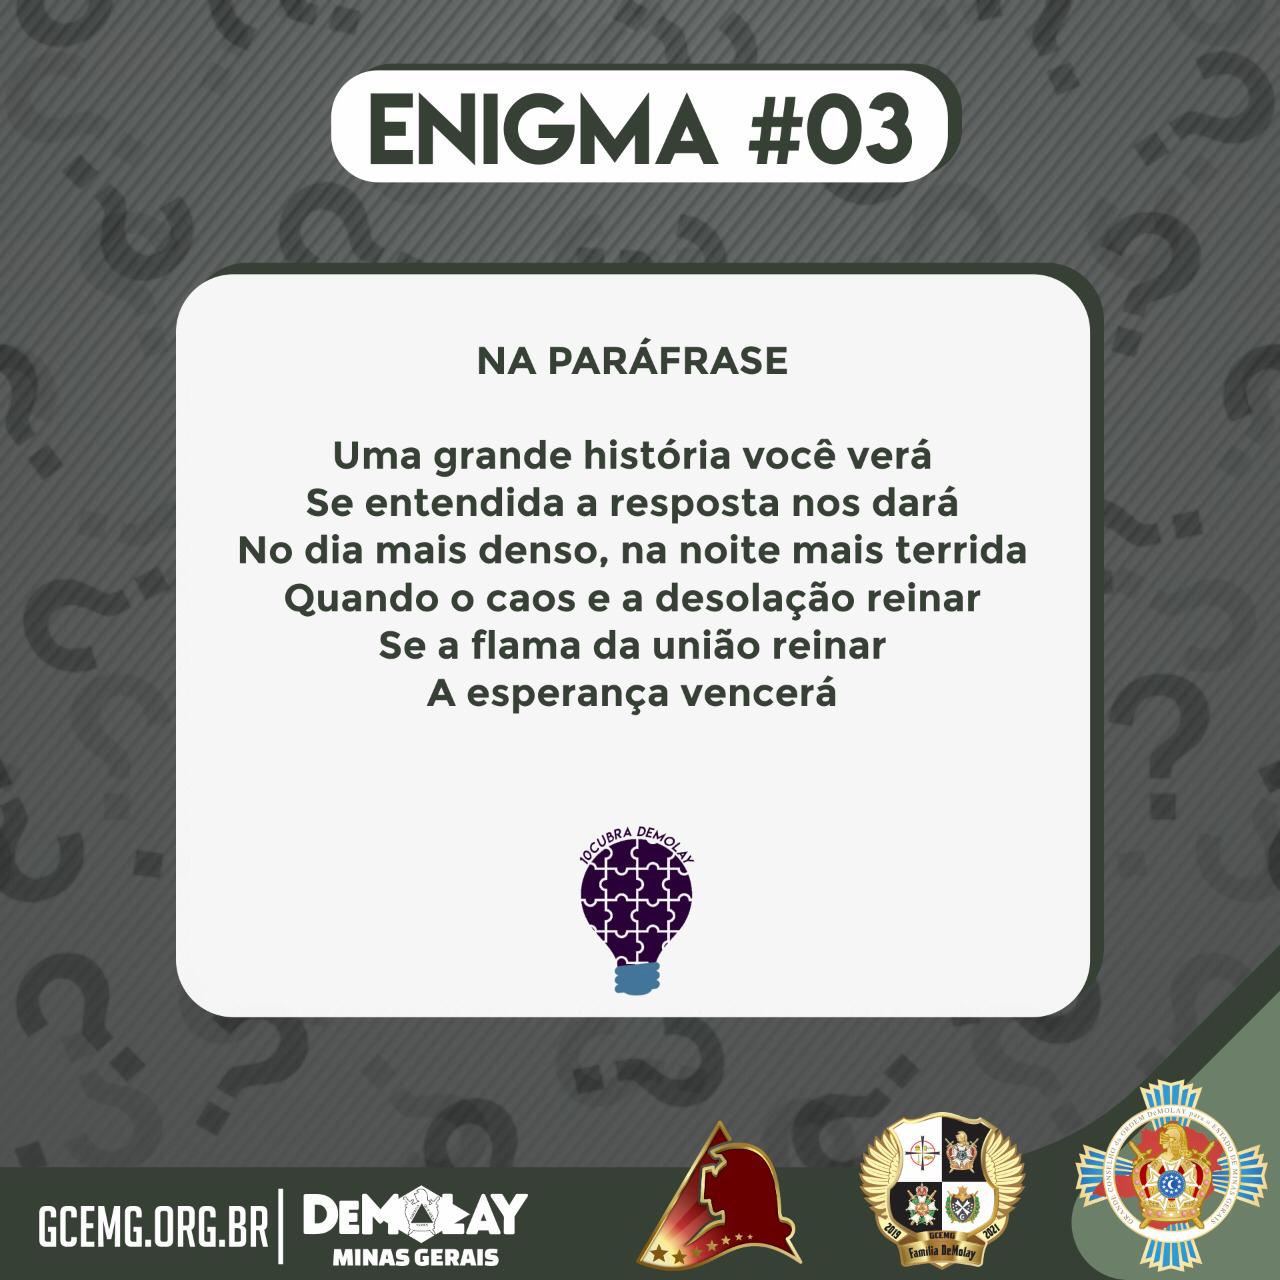 10cubra DeMolay: Enigma #03